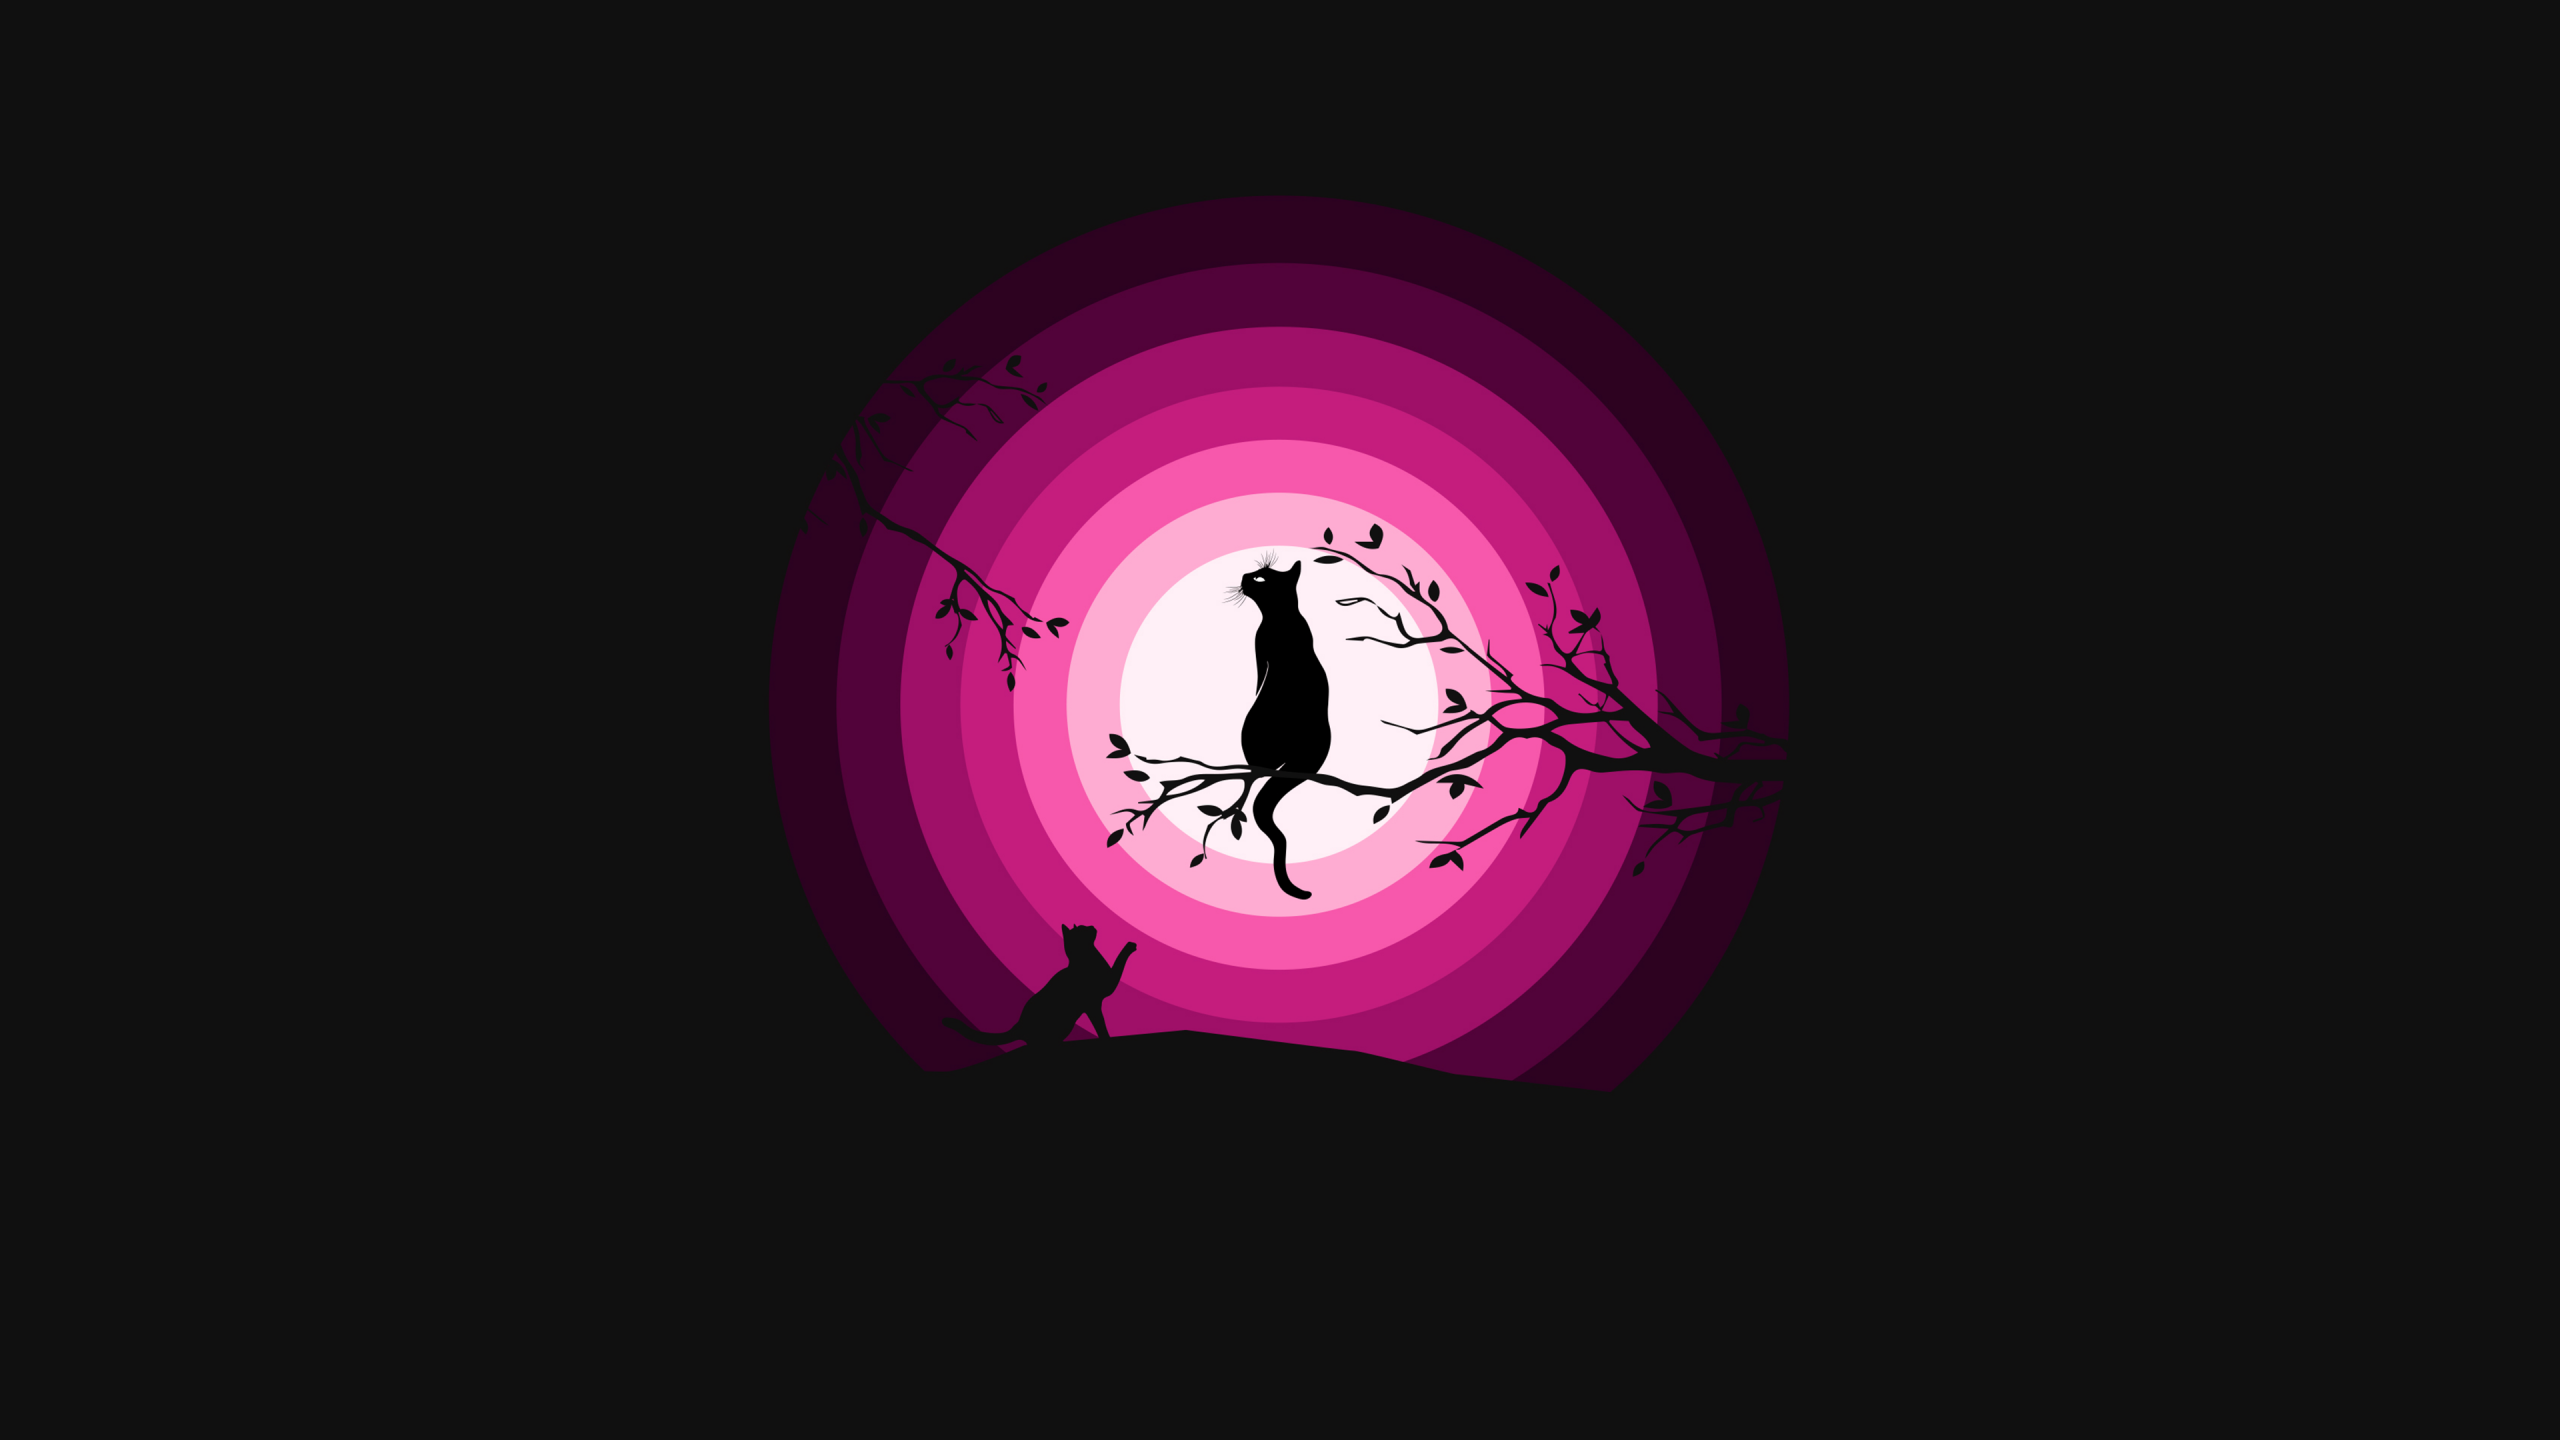 Hình nền mèo đen đỉnh với ánh trăng màu hồng sẽ làm cho màn hình của bạn tươi sáng và đầy sức sống. Hãy thưởng thức bức tranh đẹp này và cảm nhận tình yêu với thú cưng của bạn.